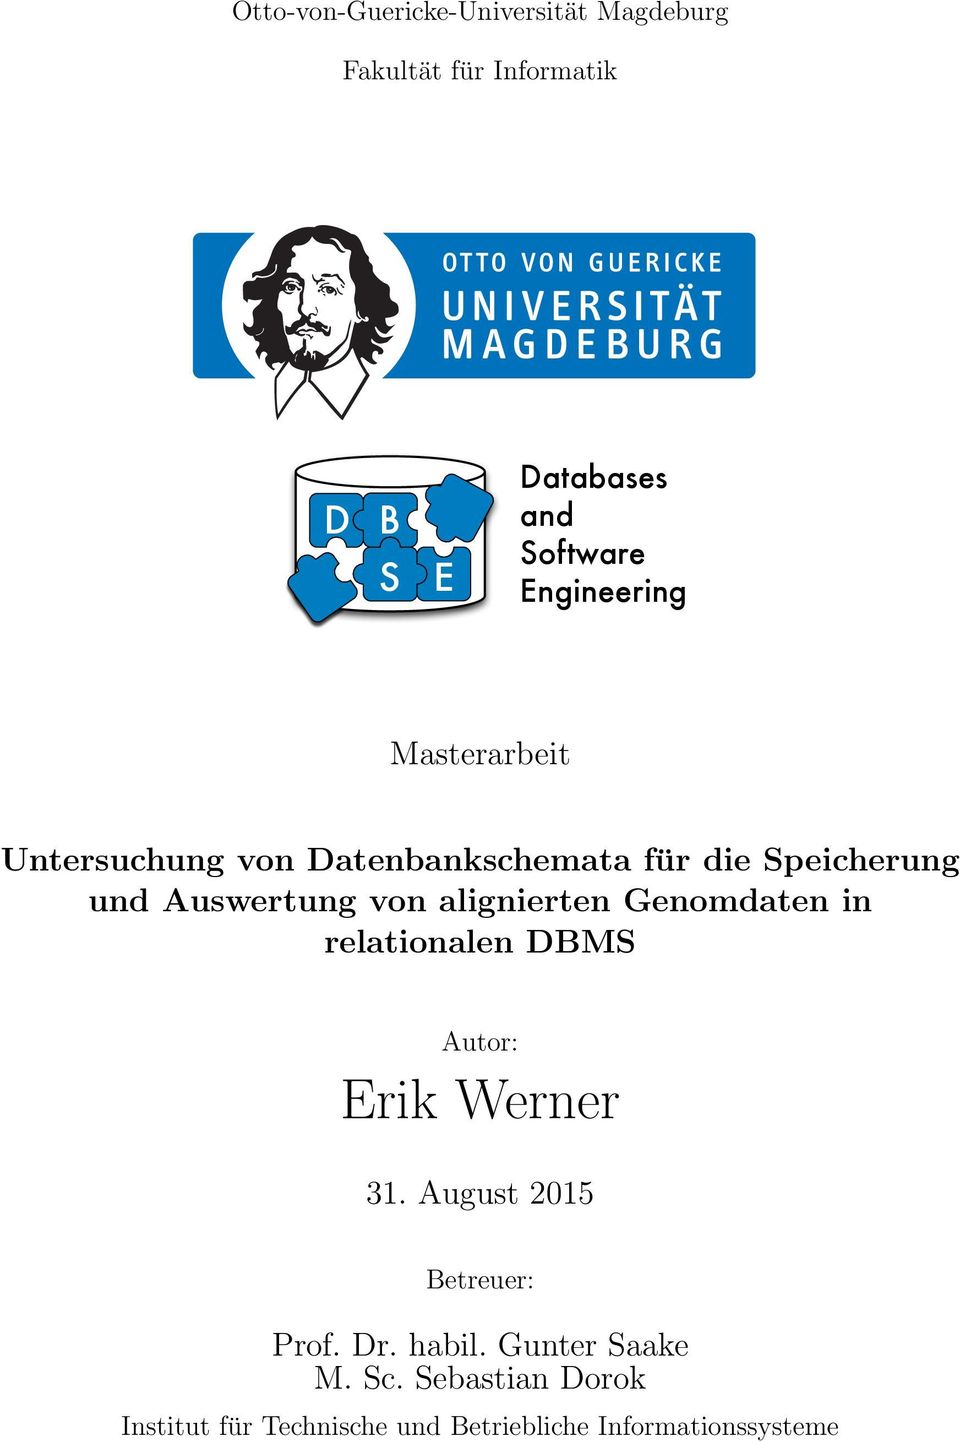 alignierten Genomdaten in relationalen DBMS Autor: Erik Werner 31. August 2015 Betreuer: Prof. Dr.